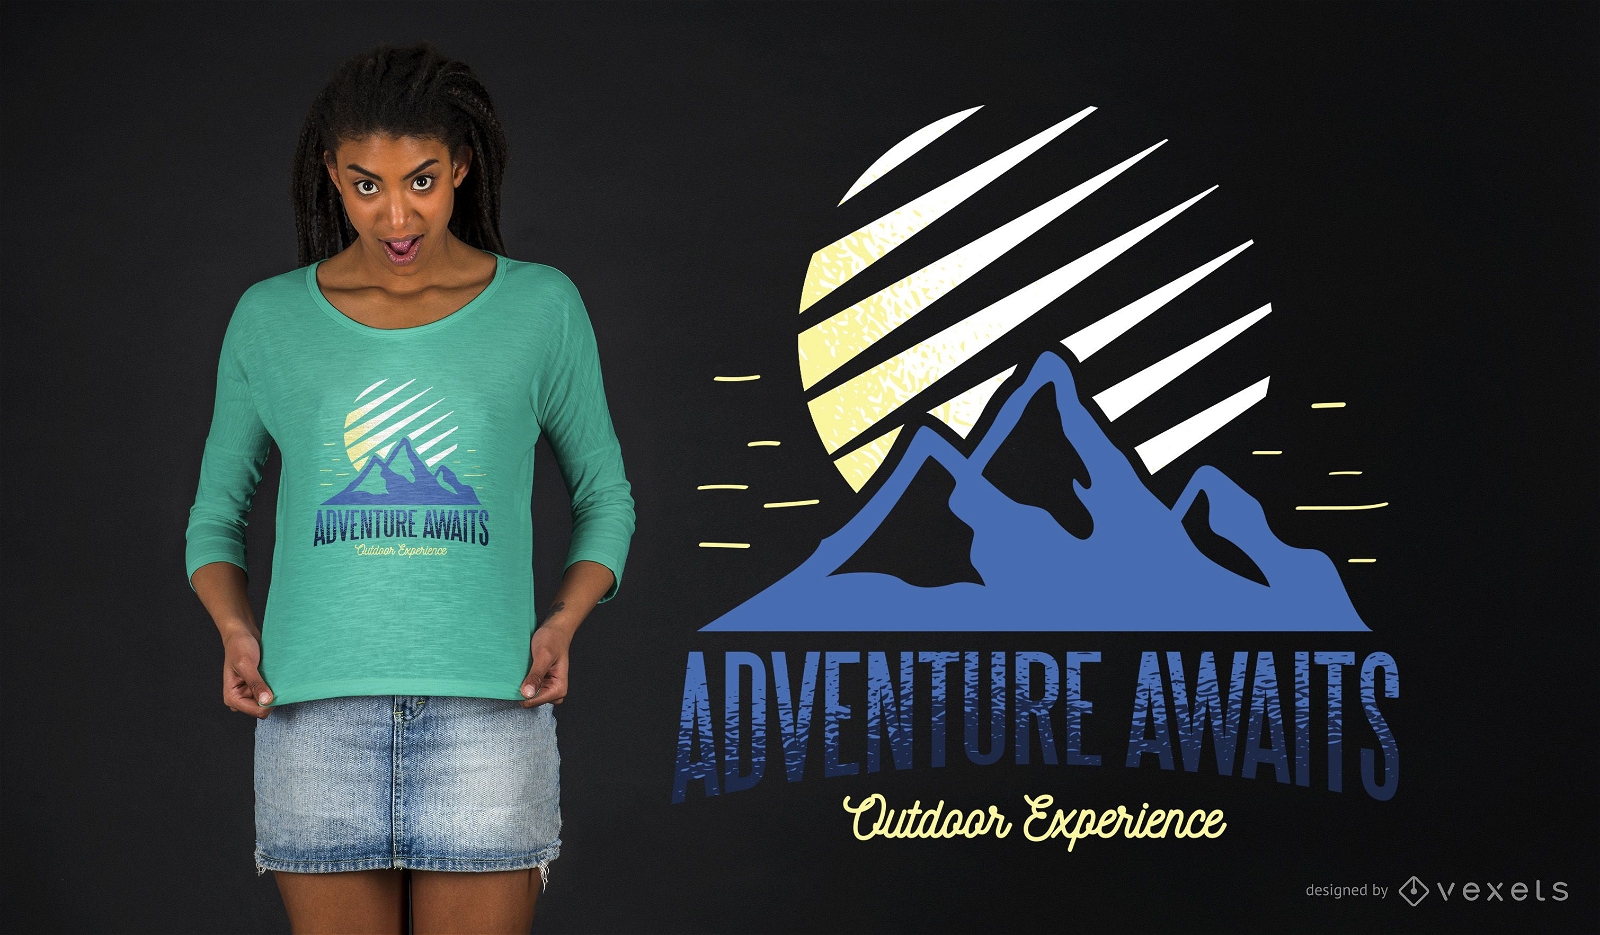 Abenteuer erwartet Outdoor Experience T-Shirt Design